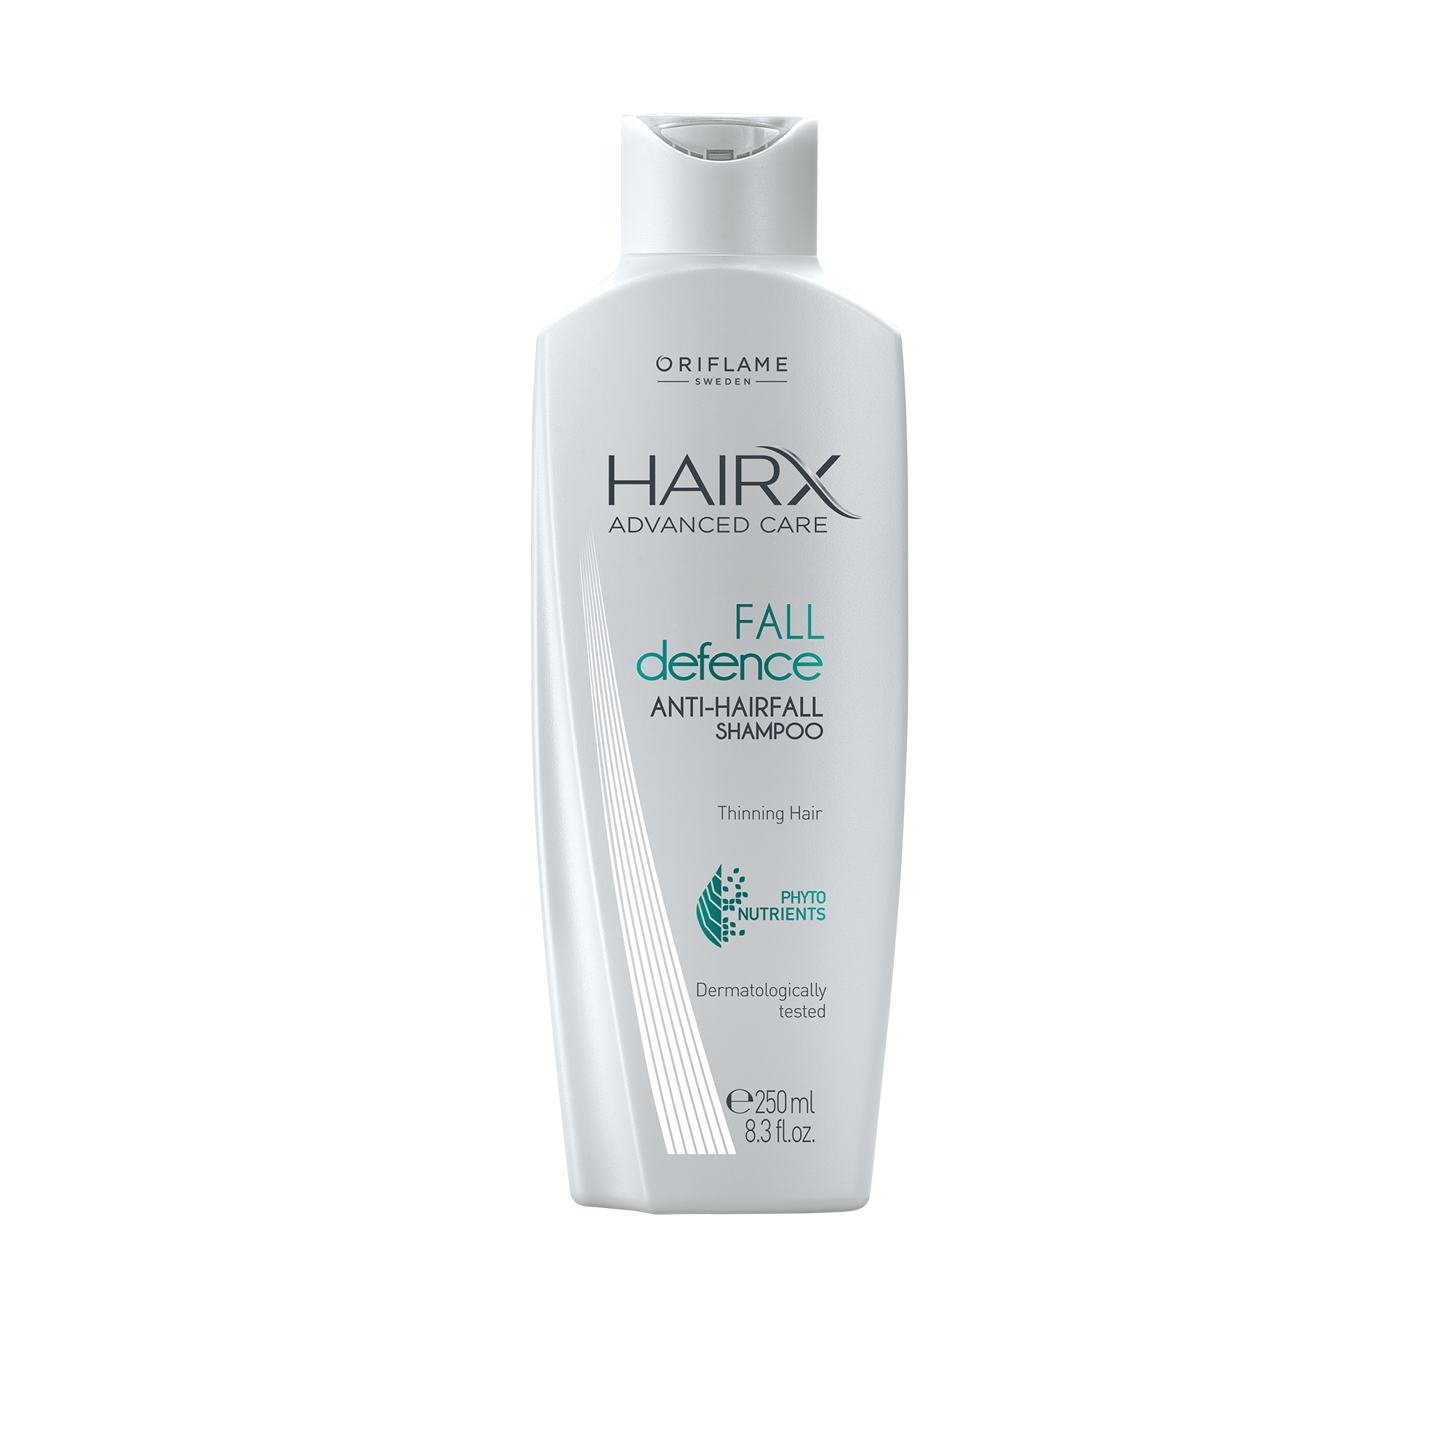 oriflame hairx hair timeresist szampon